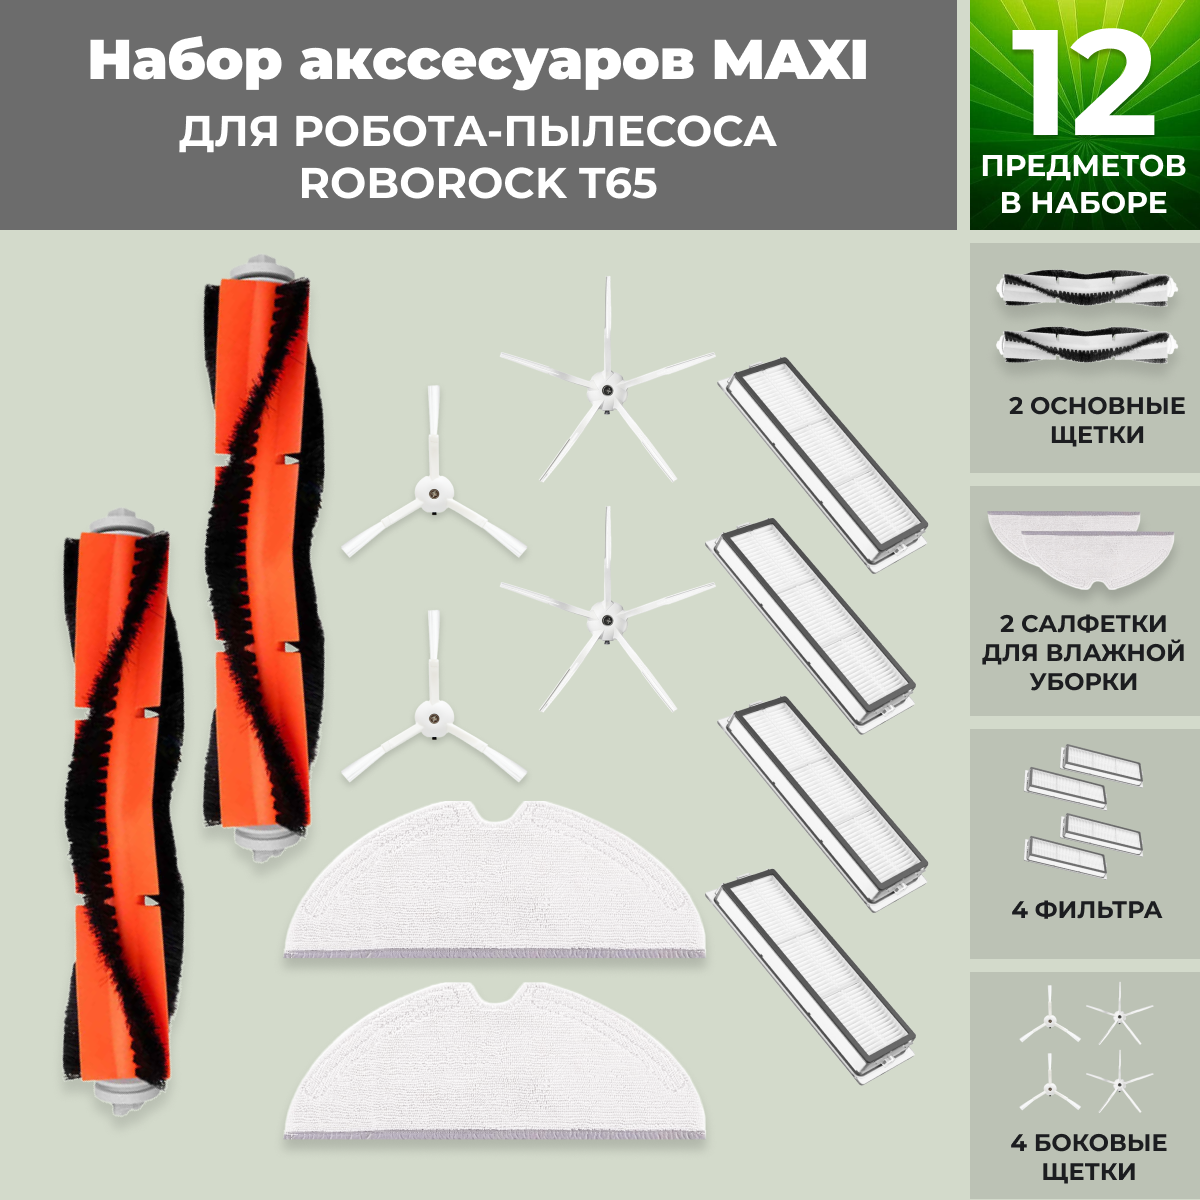 Набор аксессуаров Maxi для робота-пылесоса Roborock Т65, белые боковые щетки 558337, фото 1